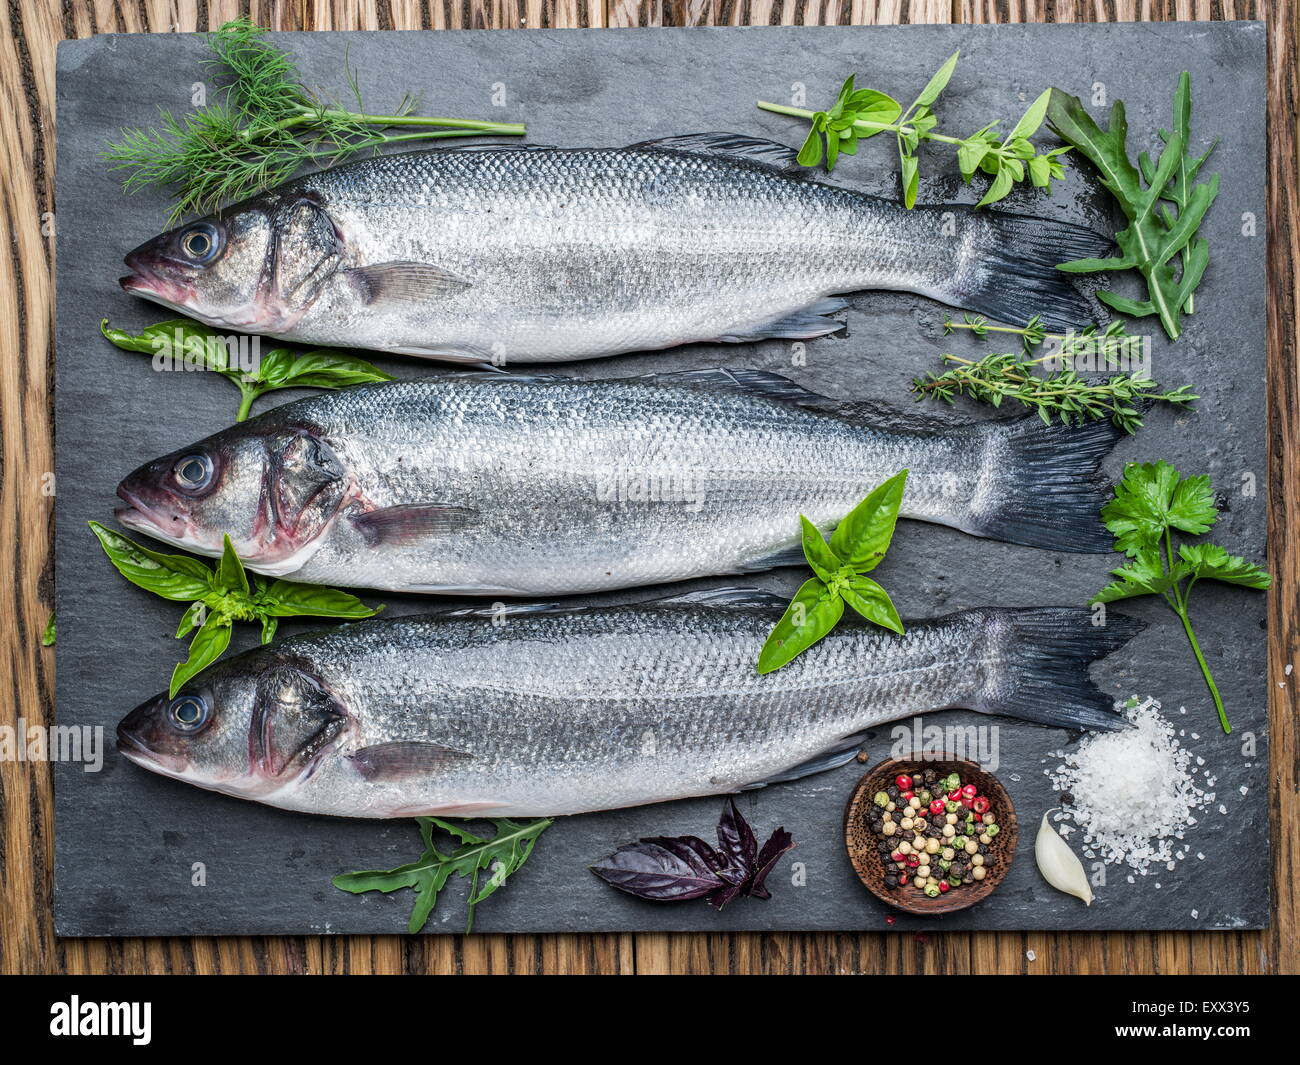 Trois poissons - sea bass sur une carte graphite avec épices et herbes. Banque D'Images